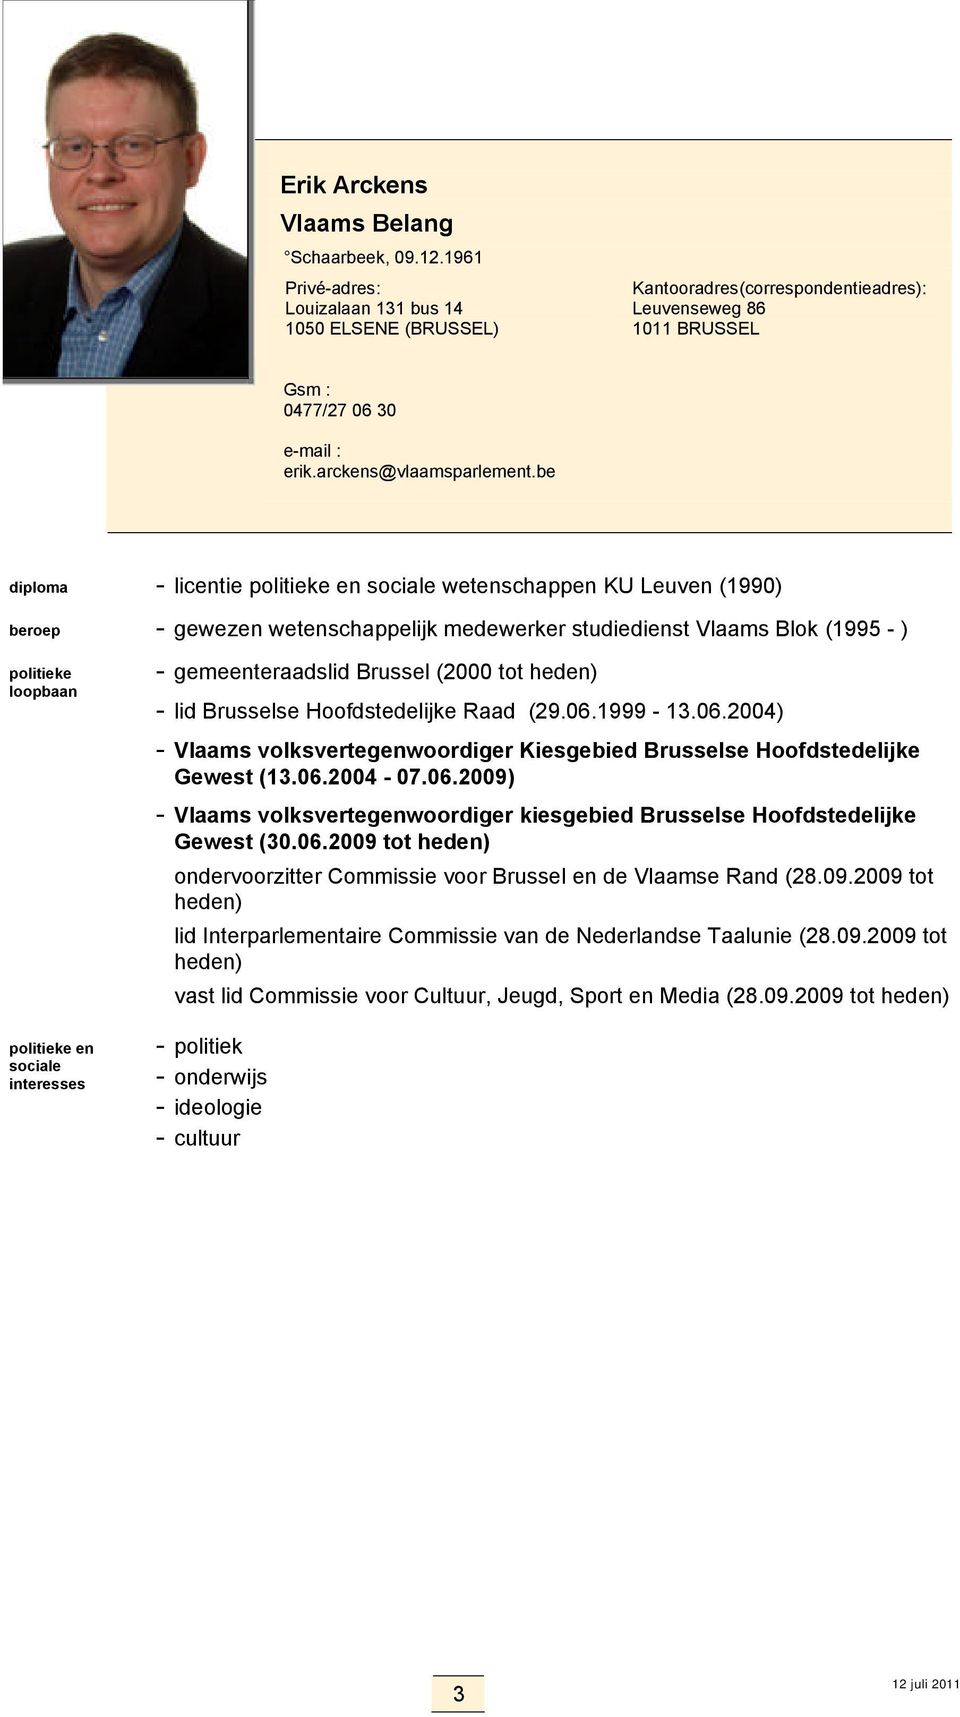 Hoofdstedelijke Raad (29.06.1999-13.06.2004) - Vlaams volksvertegenwoordiger Kiesgebied Brusselse Hoofdstedelijke Gewest (13.06.2004-07.06.2009) - Vlaams volksvertegenwoordiger kiesgebied Brusselse Hoofdstedelijke Gewest (30.